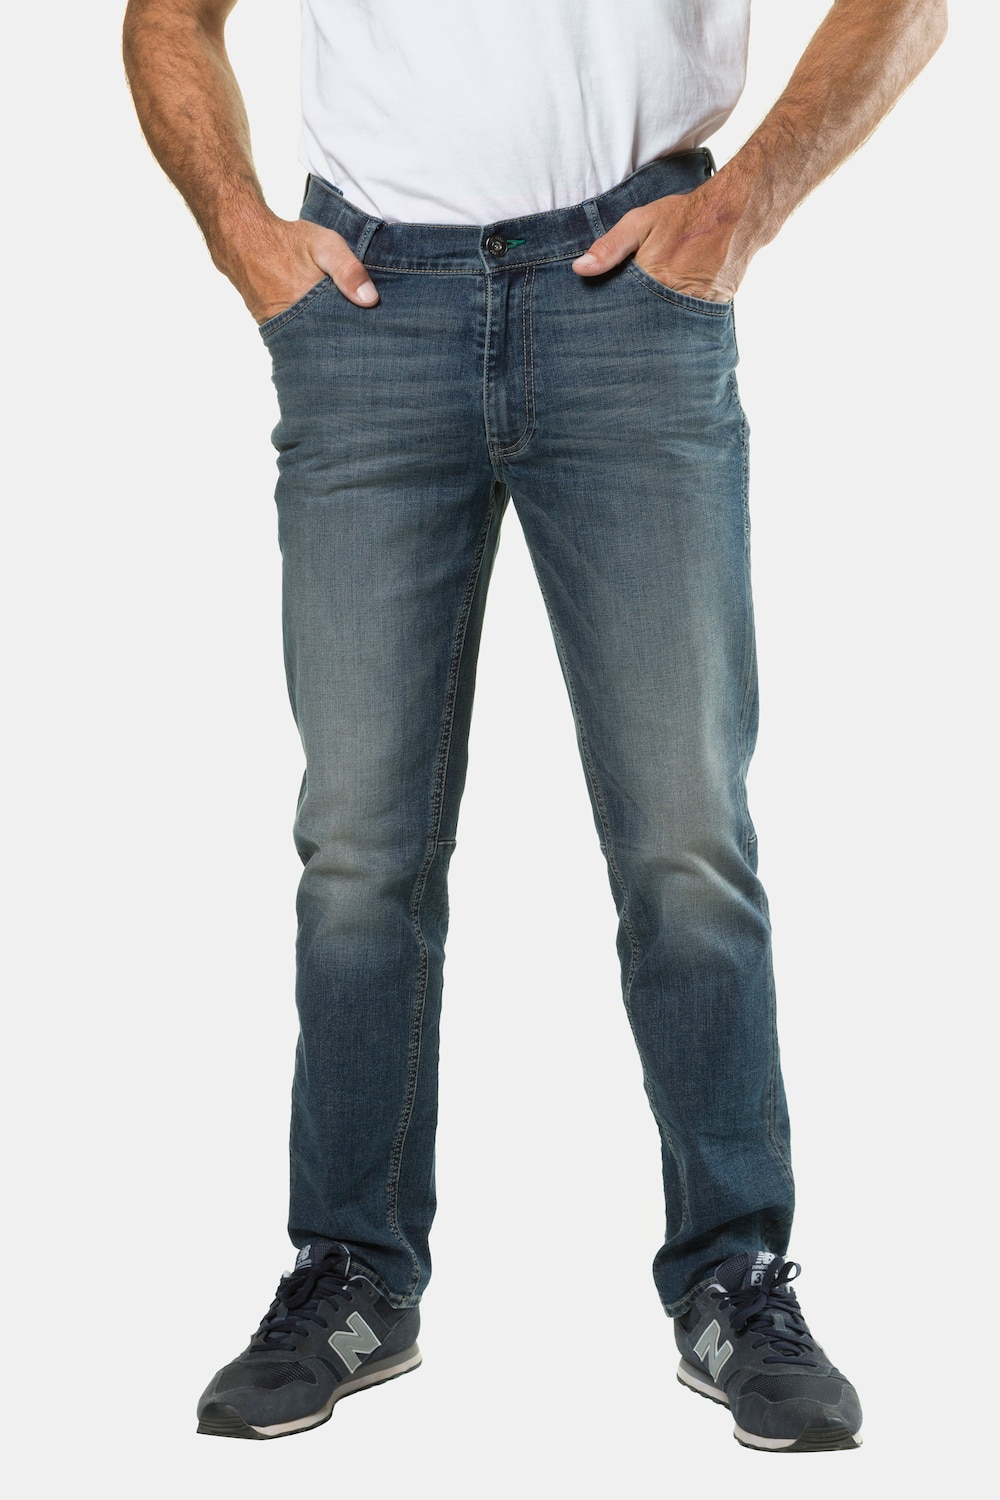 Grote Maten jeans, Heren, blauw, Maat: 64, Katoen, JP1880